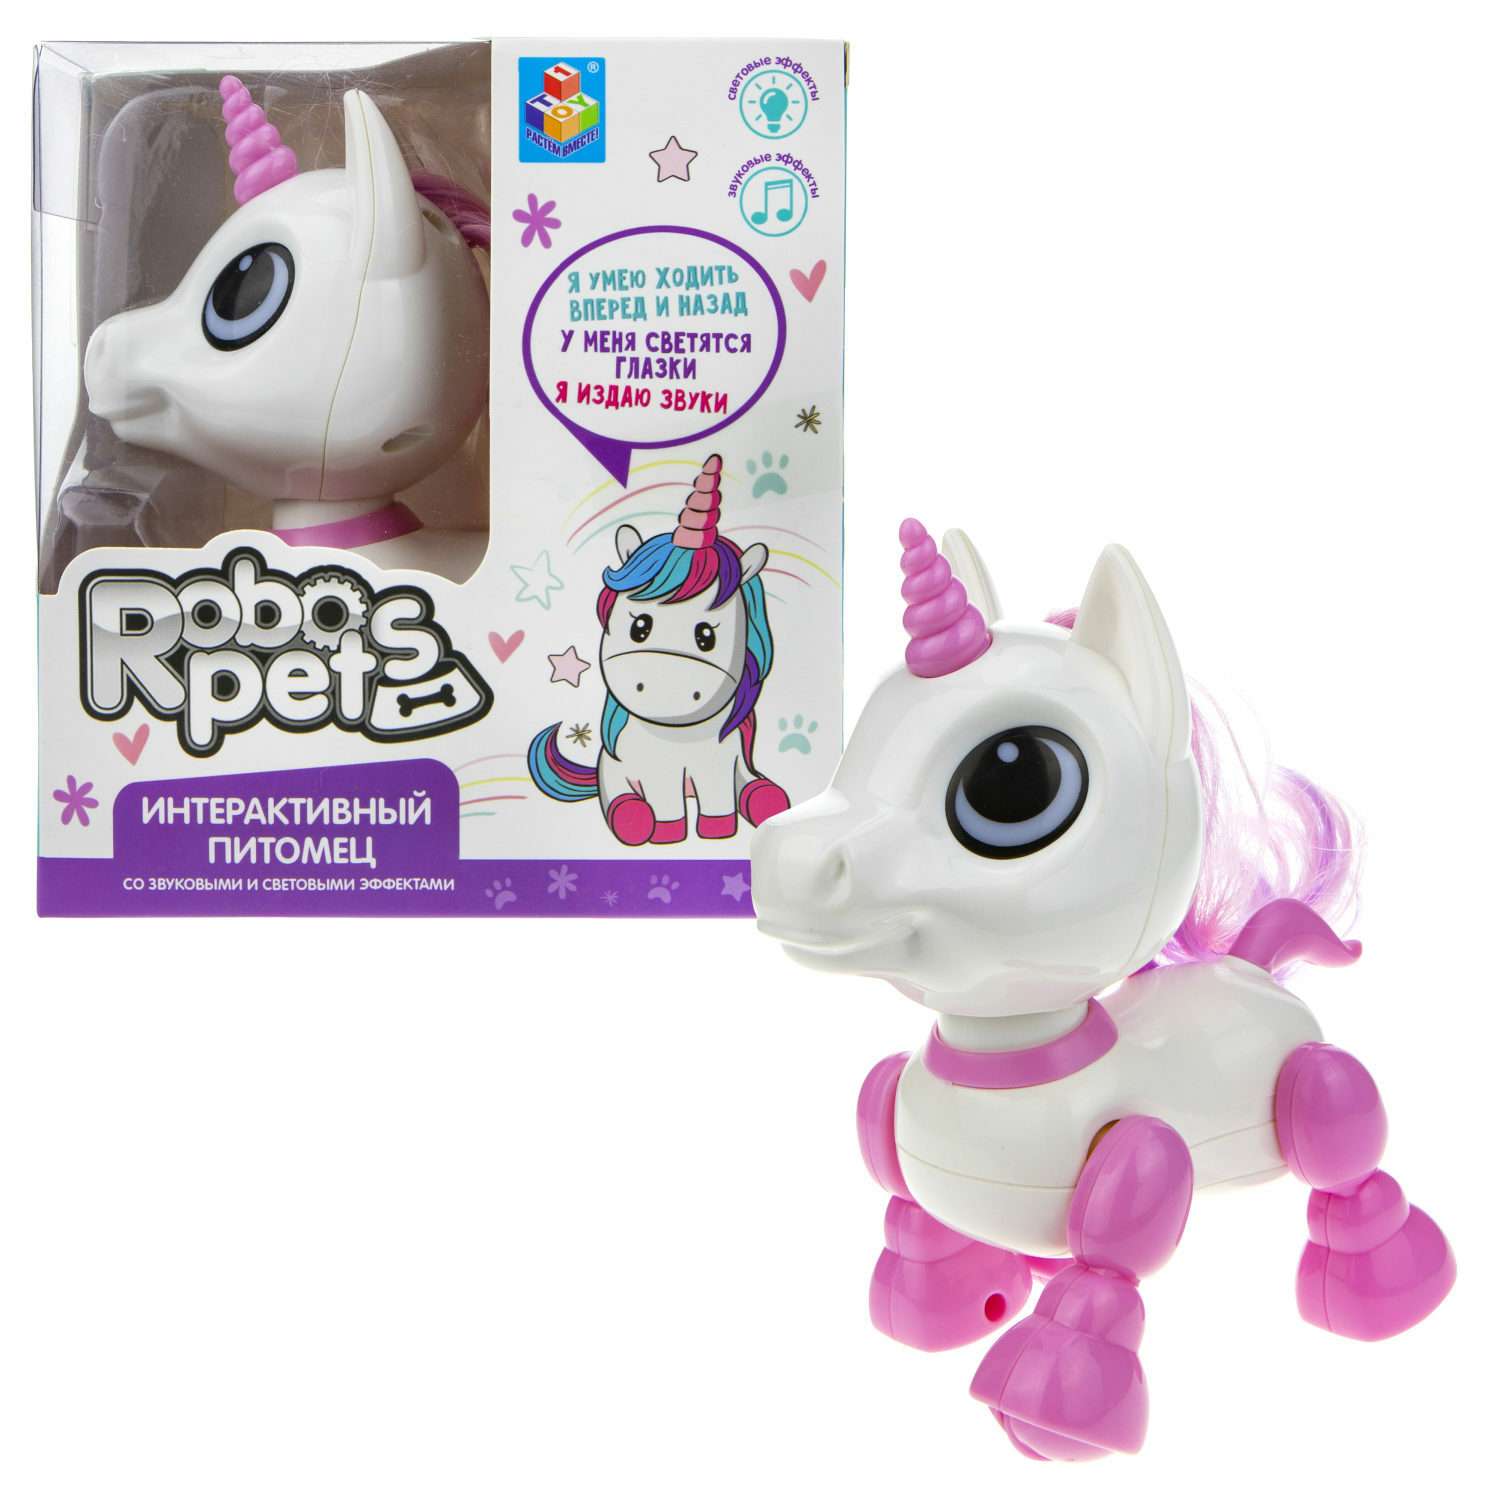 Интерактивная игрушка Robo Pets единорог розовый - фото 4